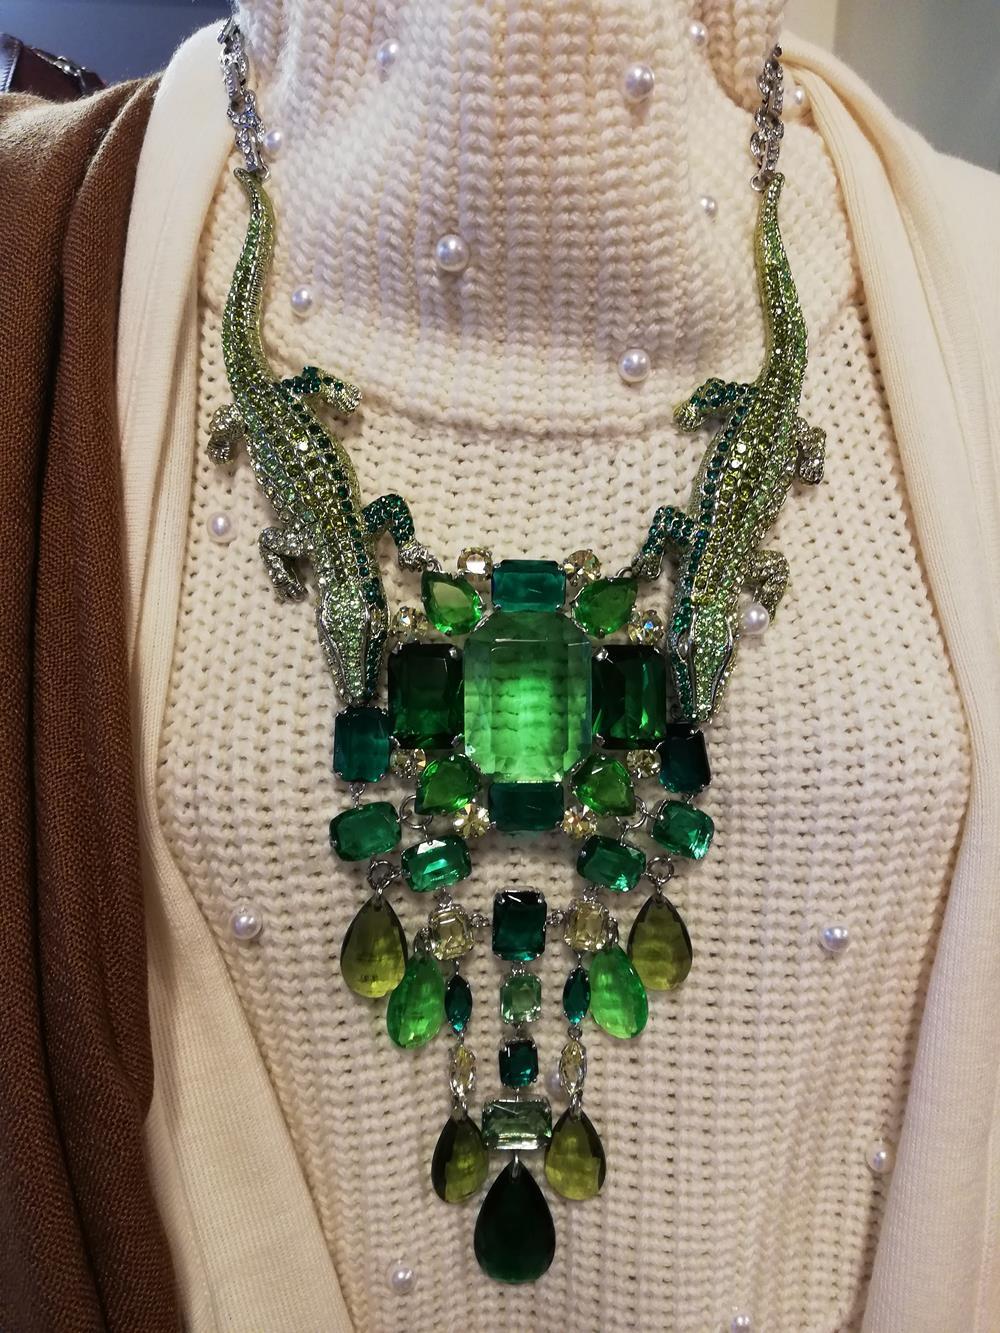 Fantastisches Werk von Carlo Zini
Einer der größten Bijoux-Designer der Welt
Nicht allergenes Rhodium
Thema Krokodile, grüne Peridotfarbe mit Smaragd- und Olivtönen
Erstaunliche Handapplikation von Swarovski-Kristallen
100% handwerkliche